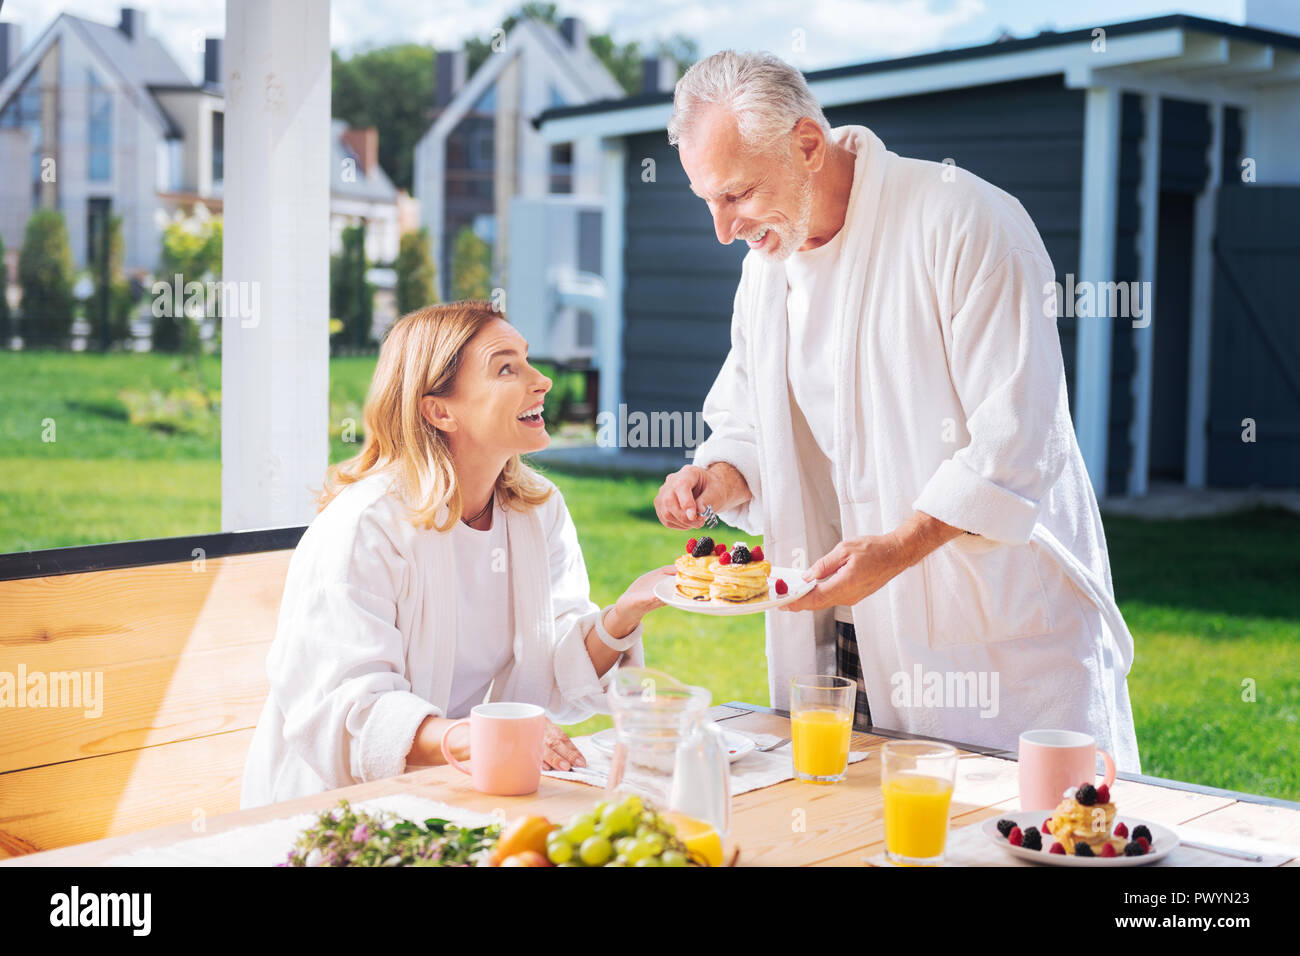 Amorevole marito maturo avendo cura di sua moglie che serve pancake con frutta per lei Foto Stock